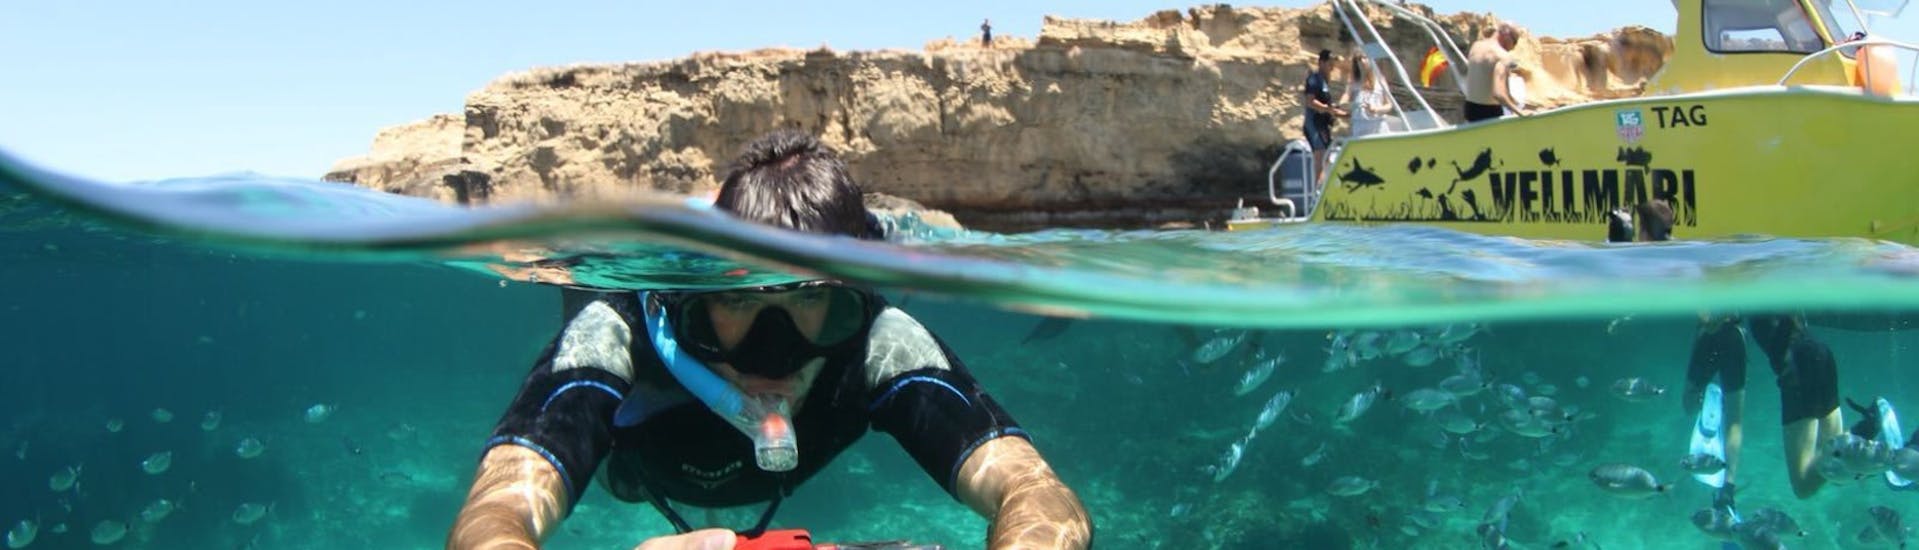 Garçon avec un appareil photo sous l'eau en train de faire du Snorkeling dans le Parc Naturel de Ses Salines depuis Formentera avec Vellmari Diving Center Formentera.